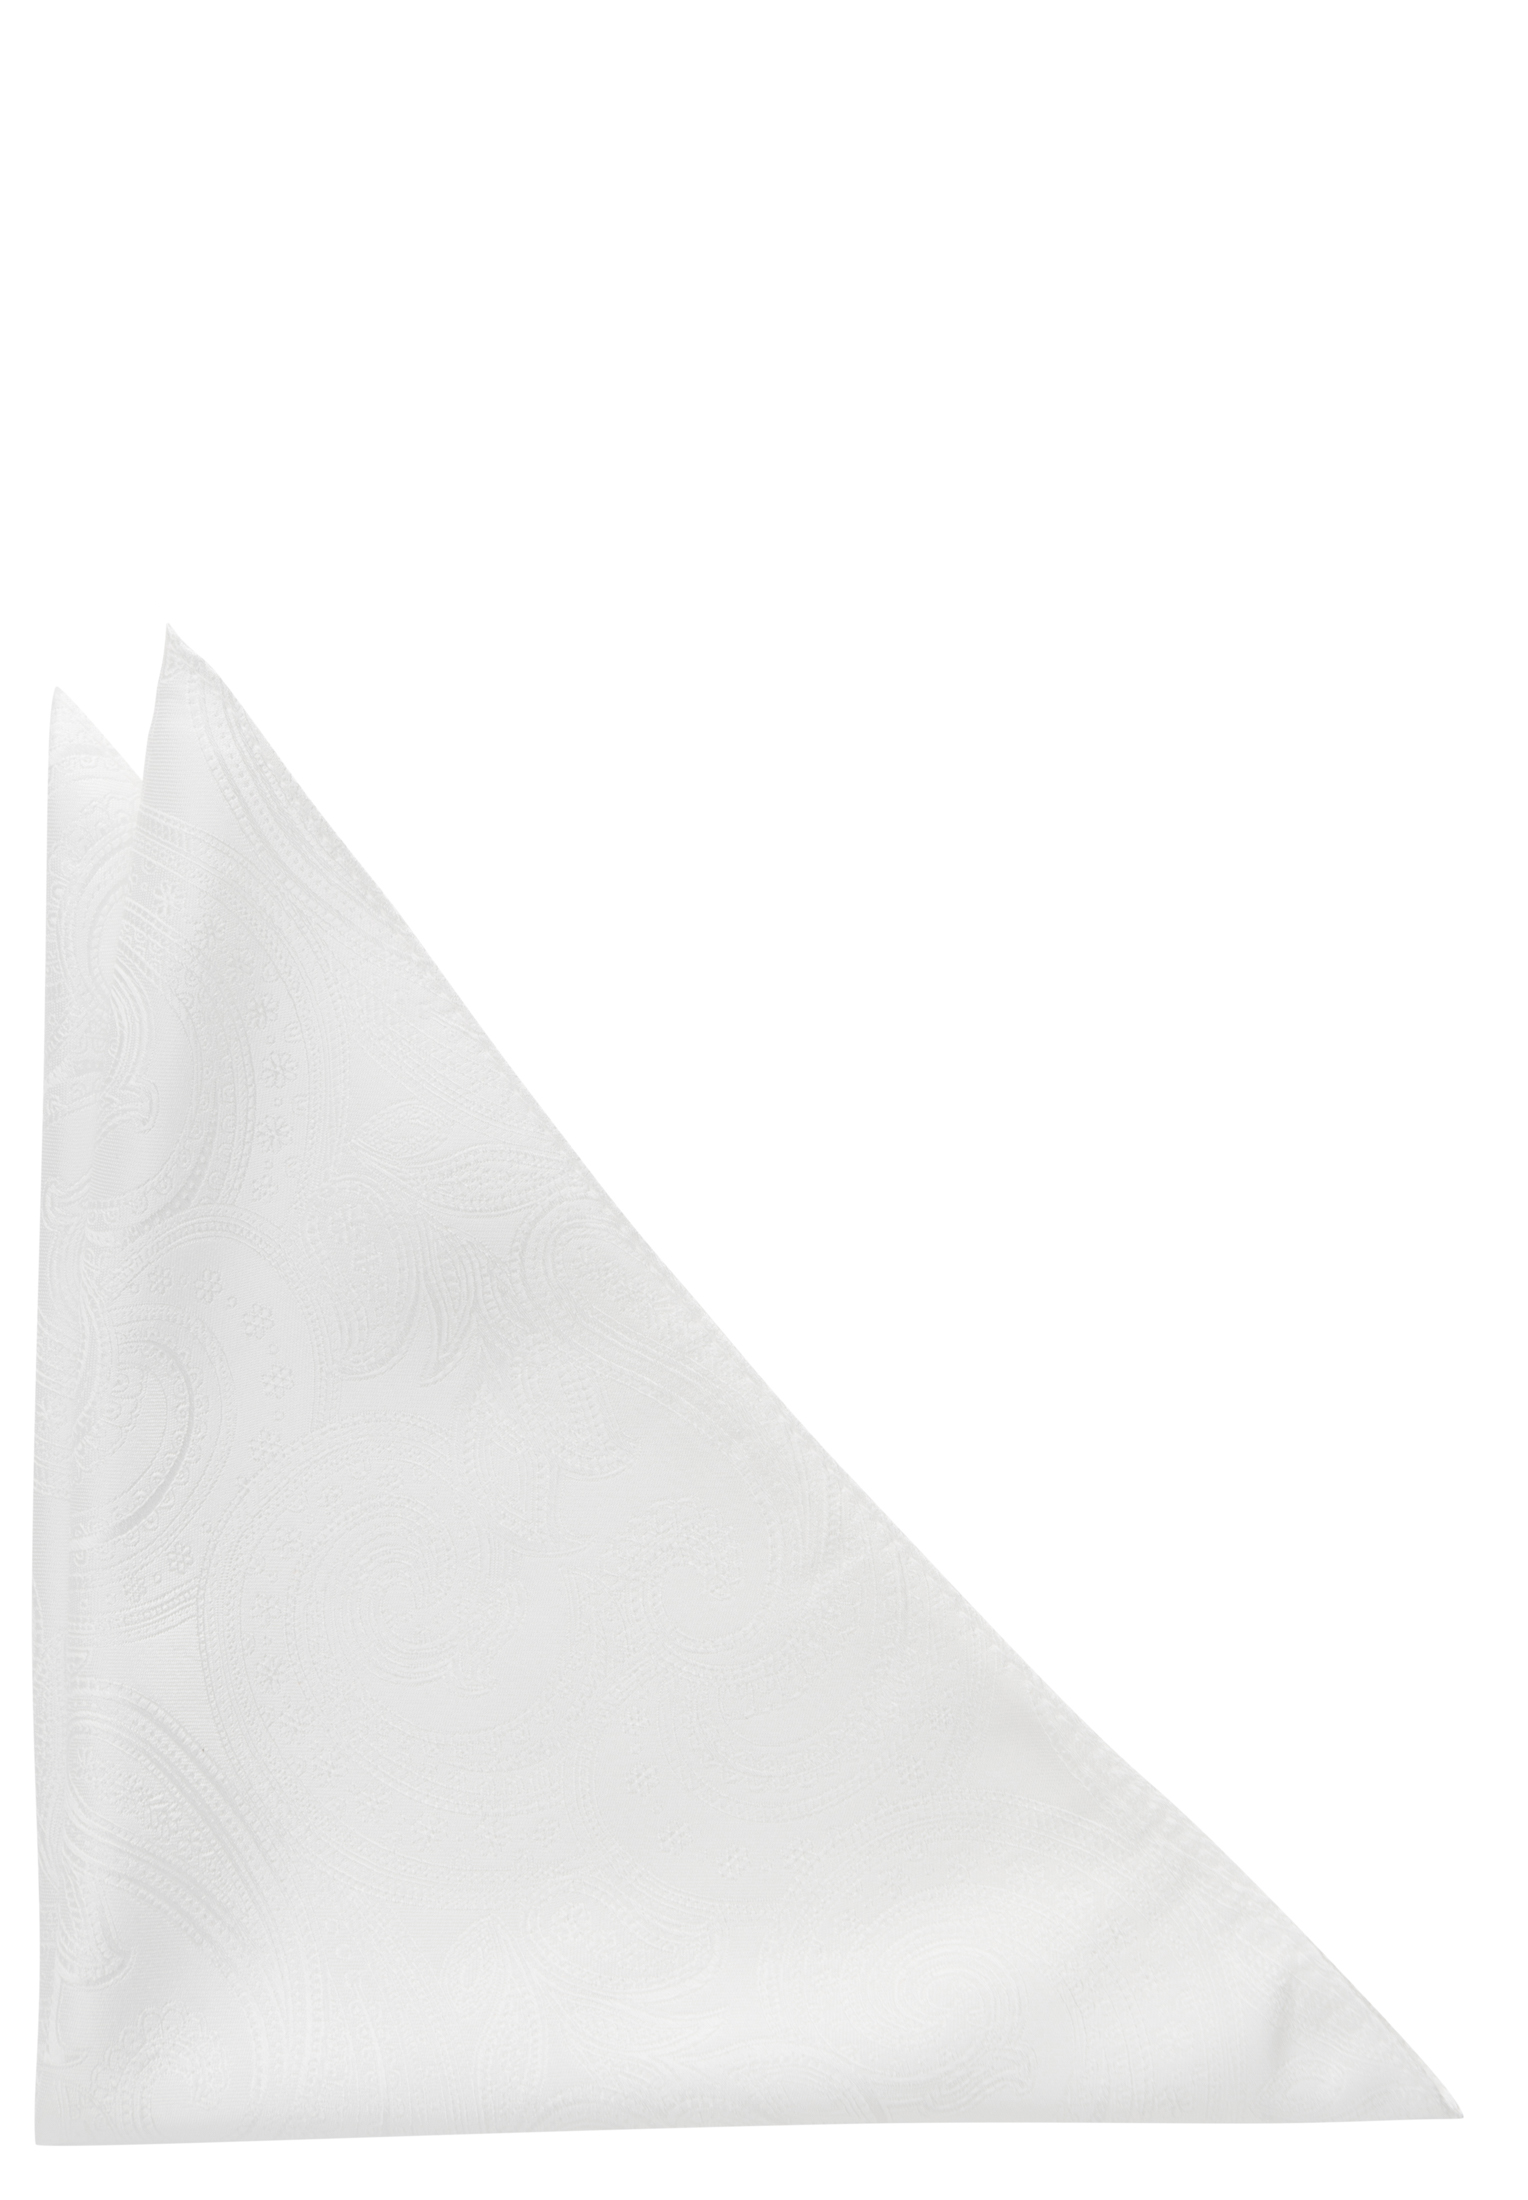 Einstecktuch in off-white gemustert | 1AC01873-00-02-OS | off-white OS 